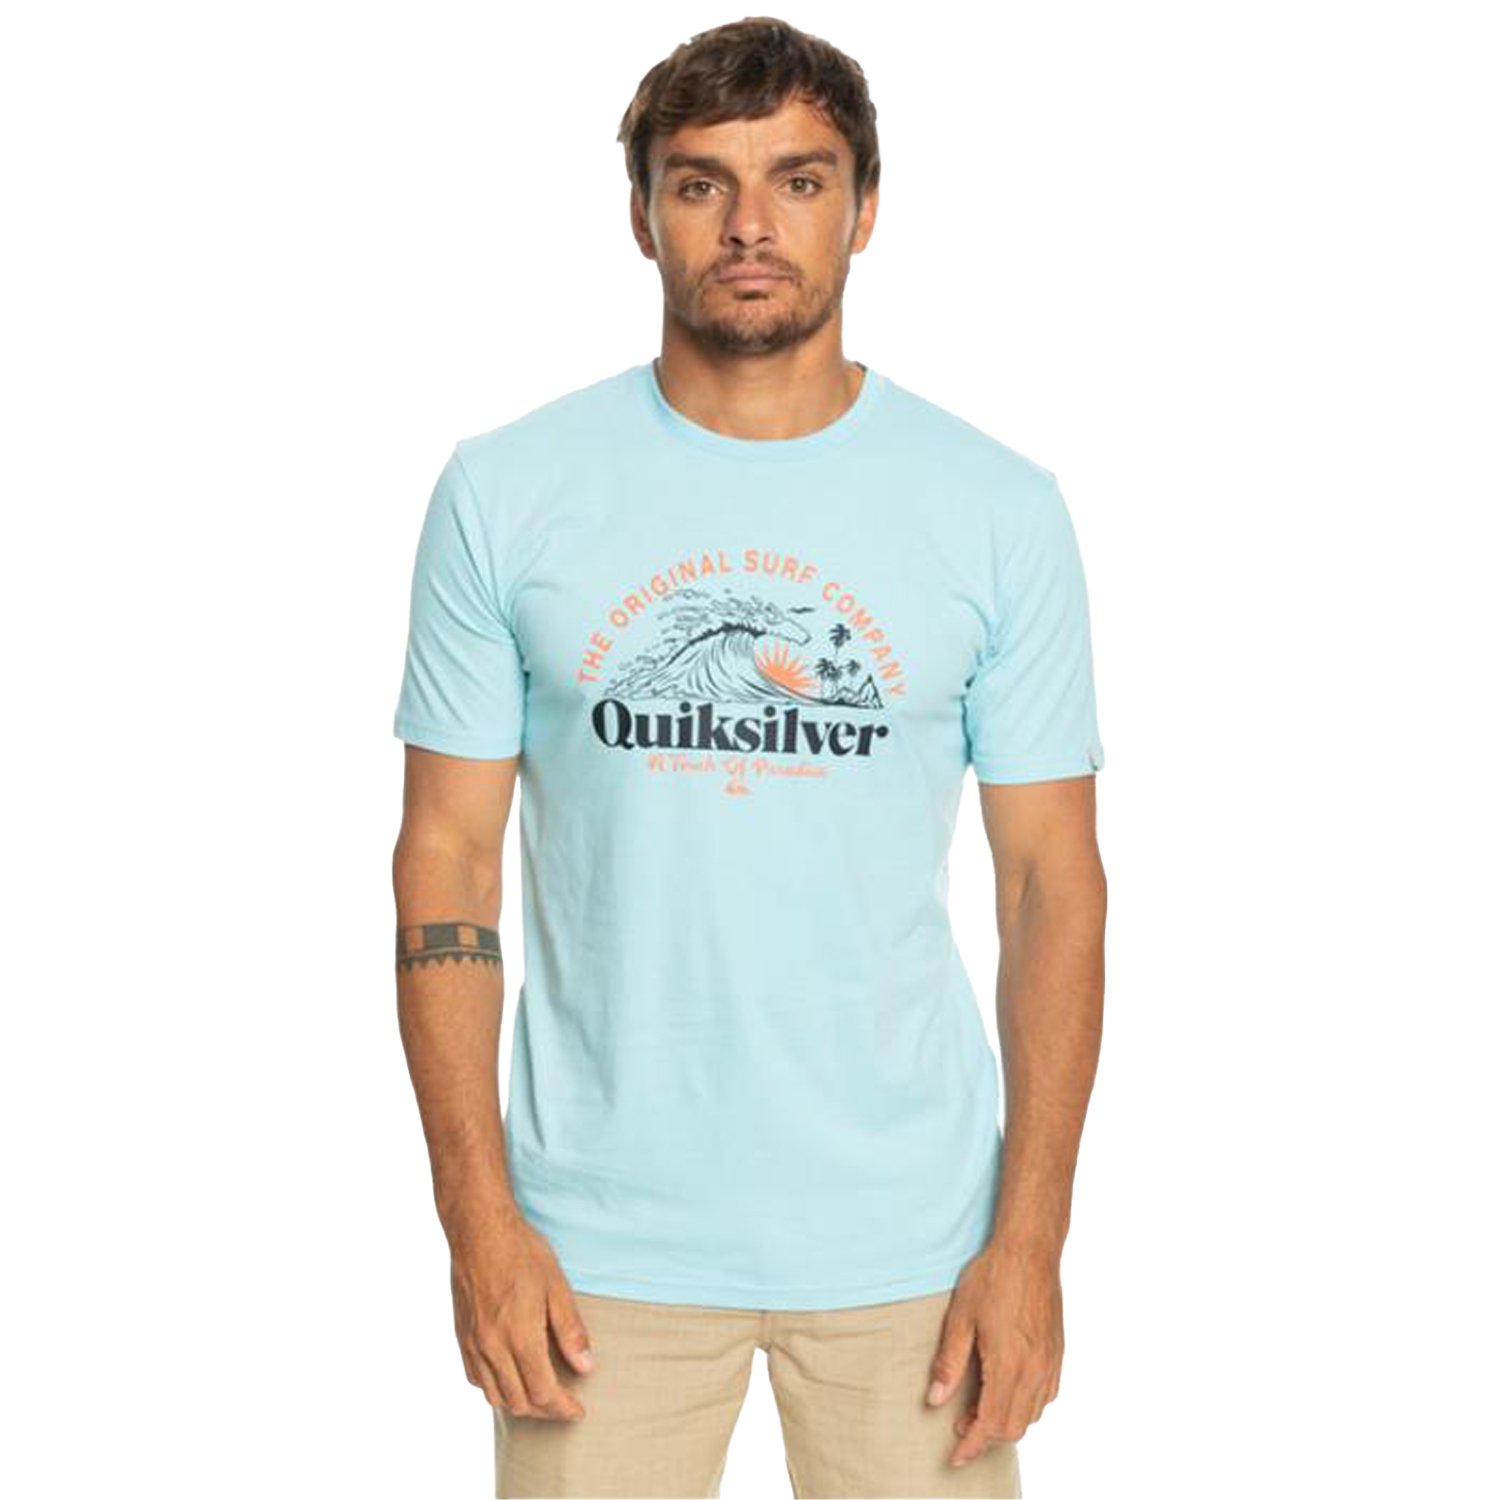 Quiksilver Sunset Wave Erkek Tişört - Mavi - 1